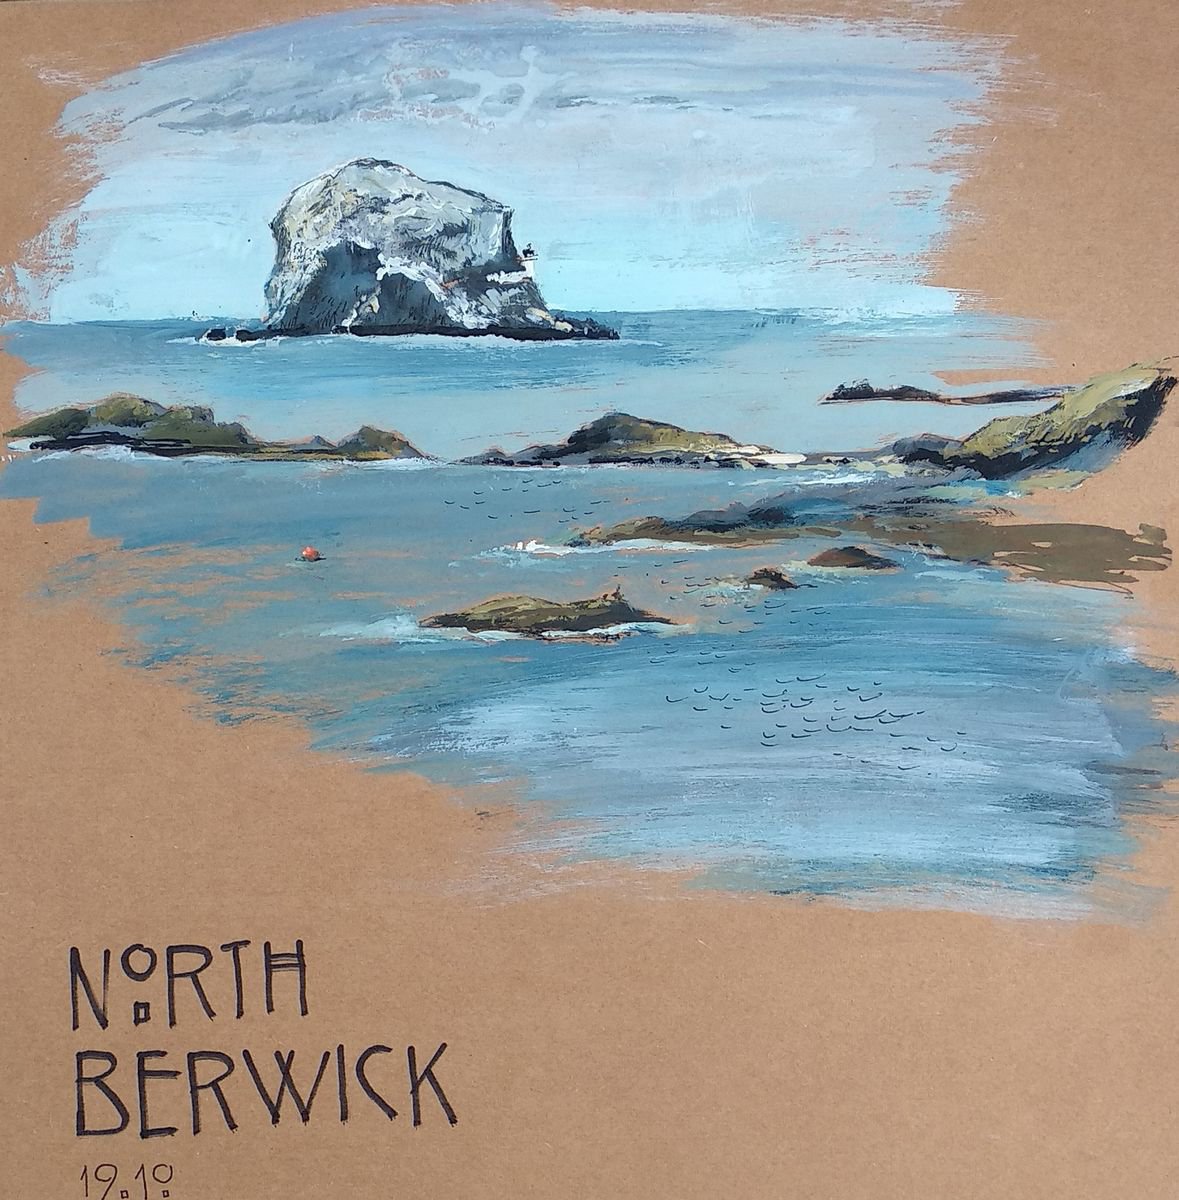 THE BASS ROCK, North Berwick. by Maiia Vysotska